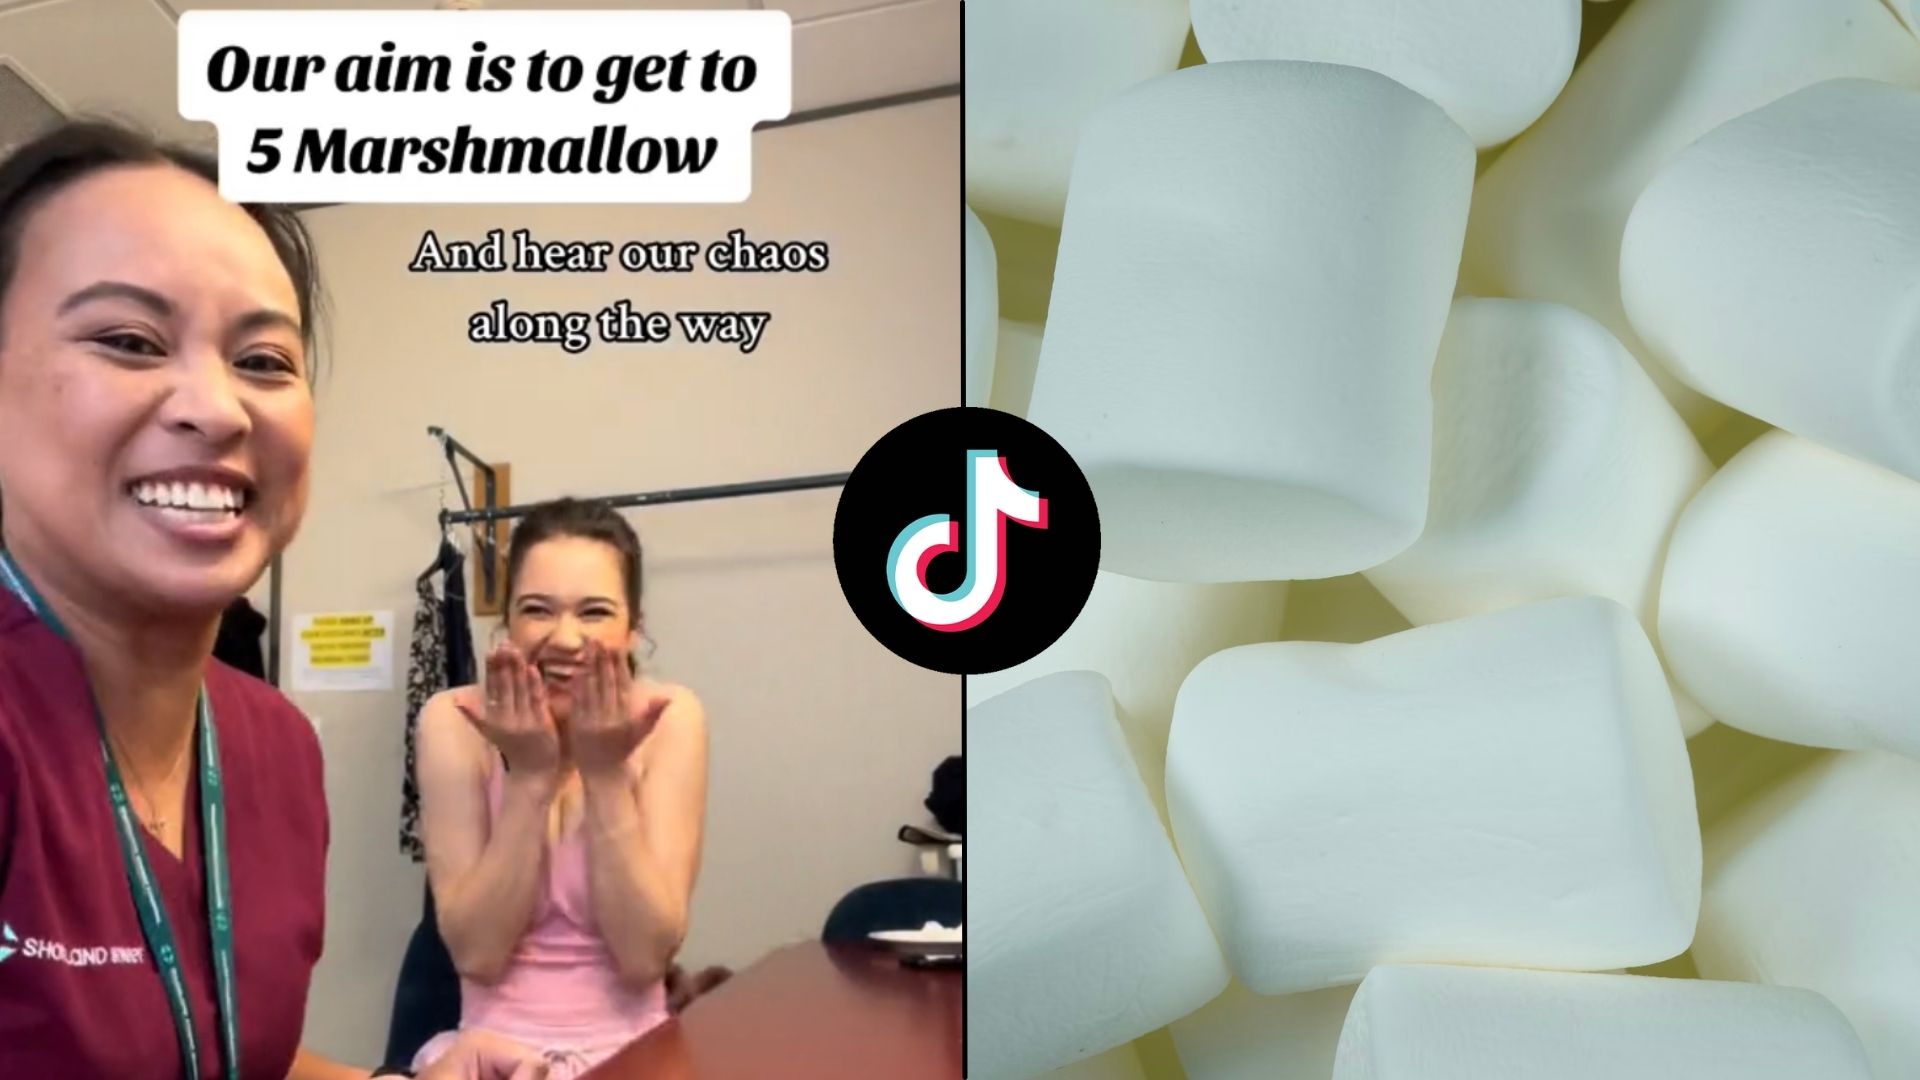 CapCut_o e marshmallow game gem i